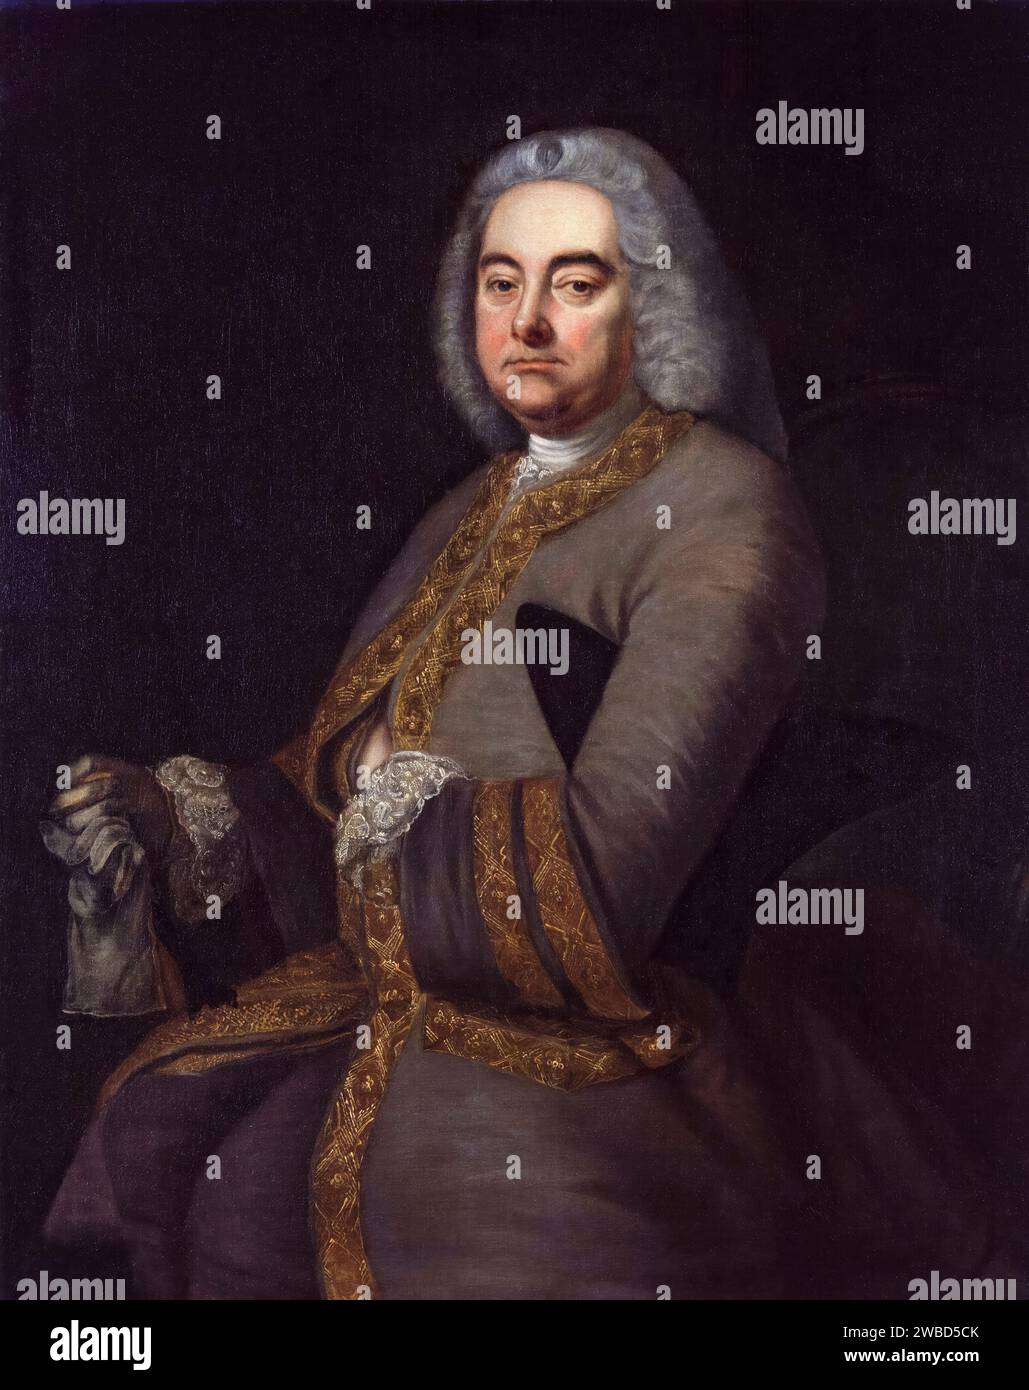 George Frideric Handel (1685-1759), compositeur baroque germano-britannique, portrait à l'huile sur toile d'après Thomas Hudson, 1756-1800 Banque D'Images